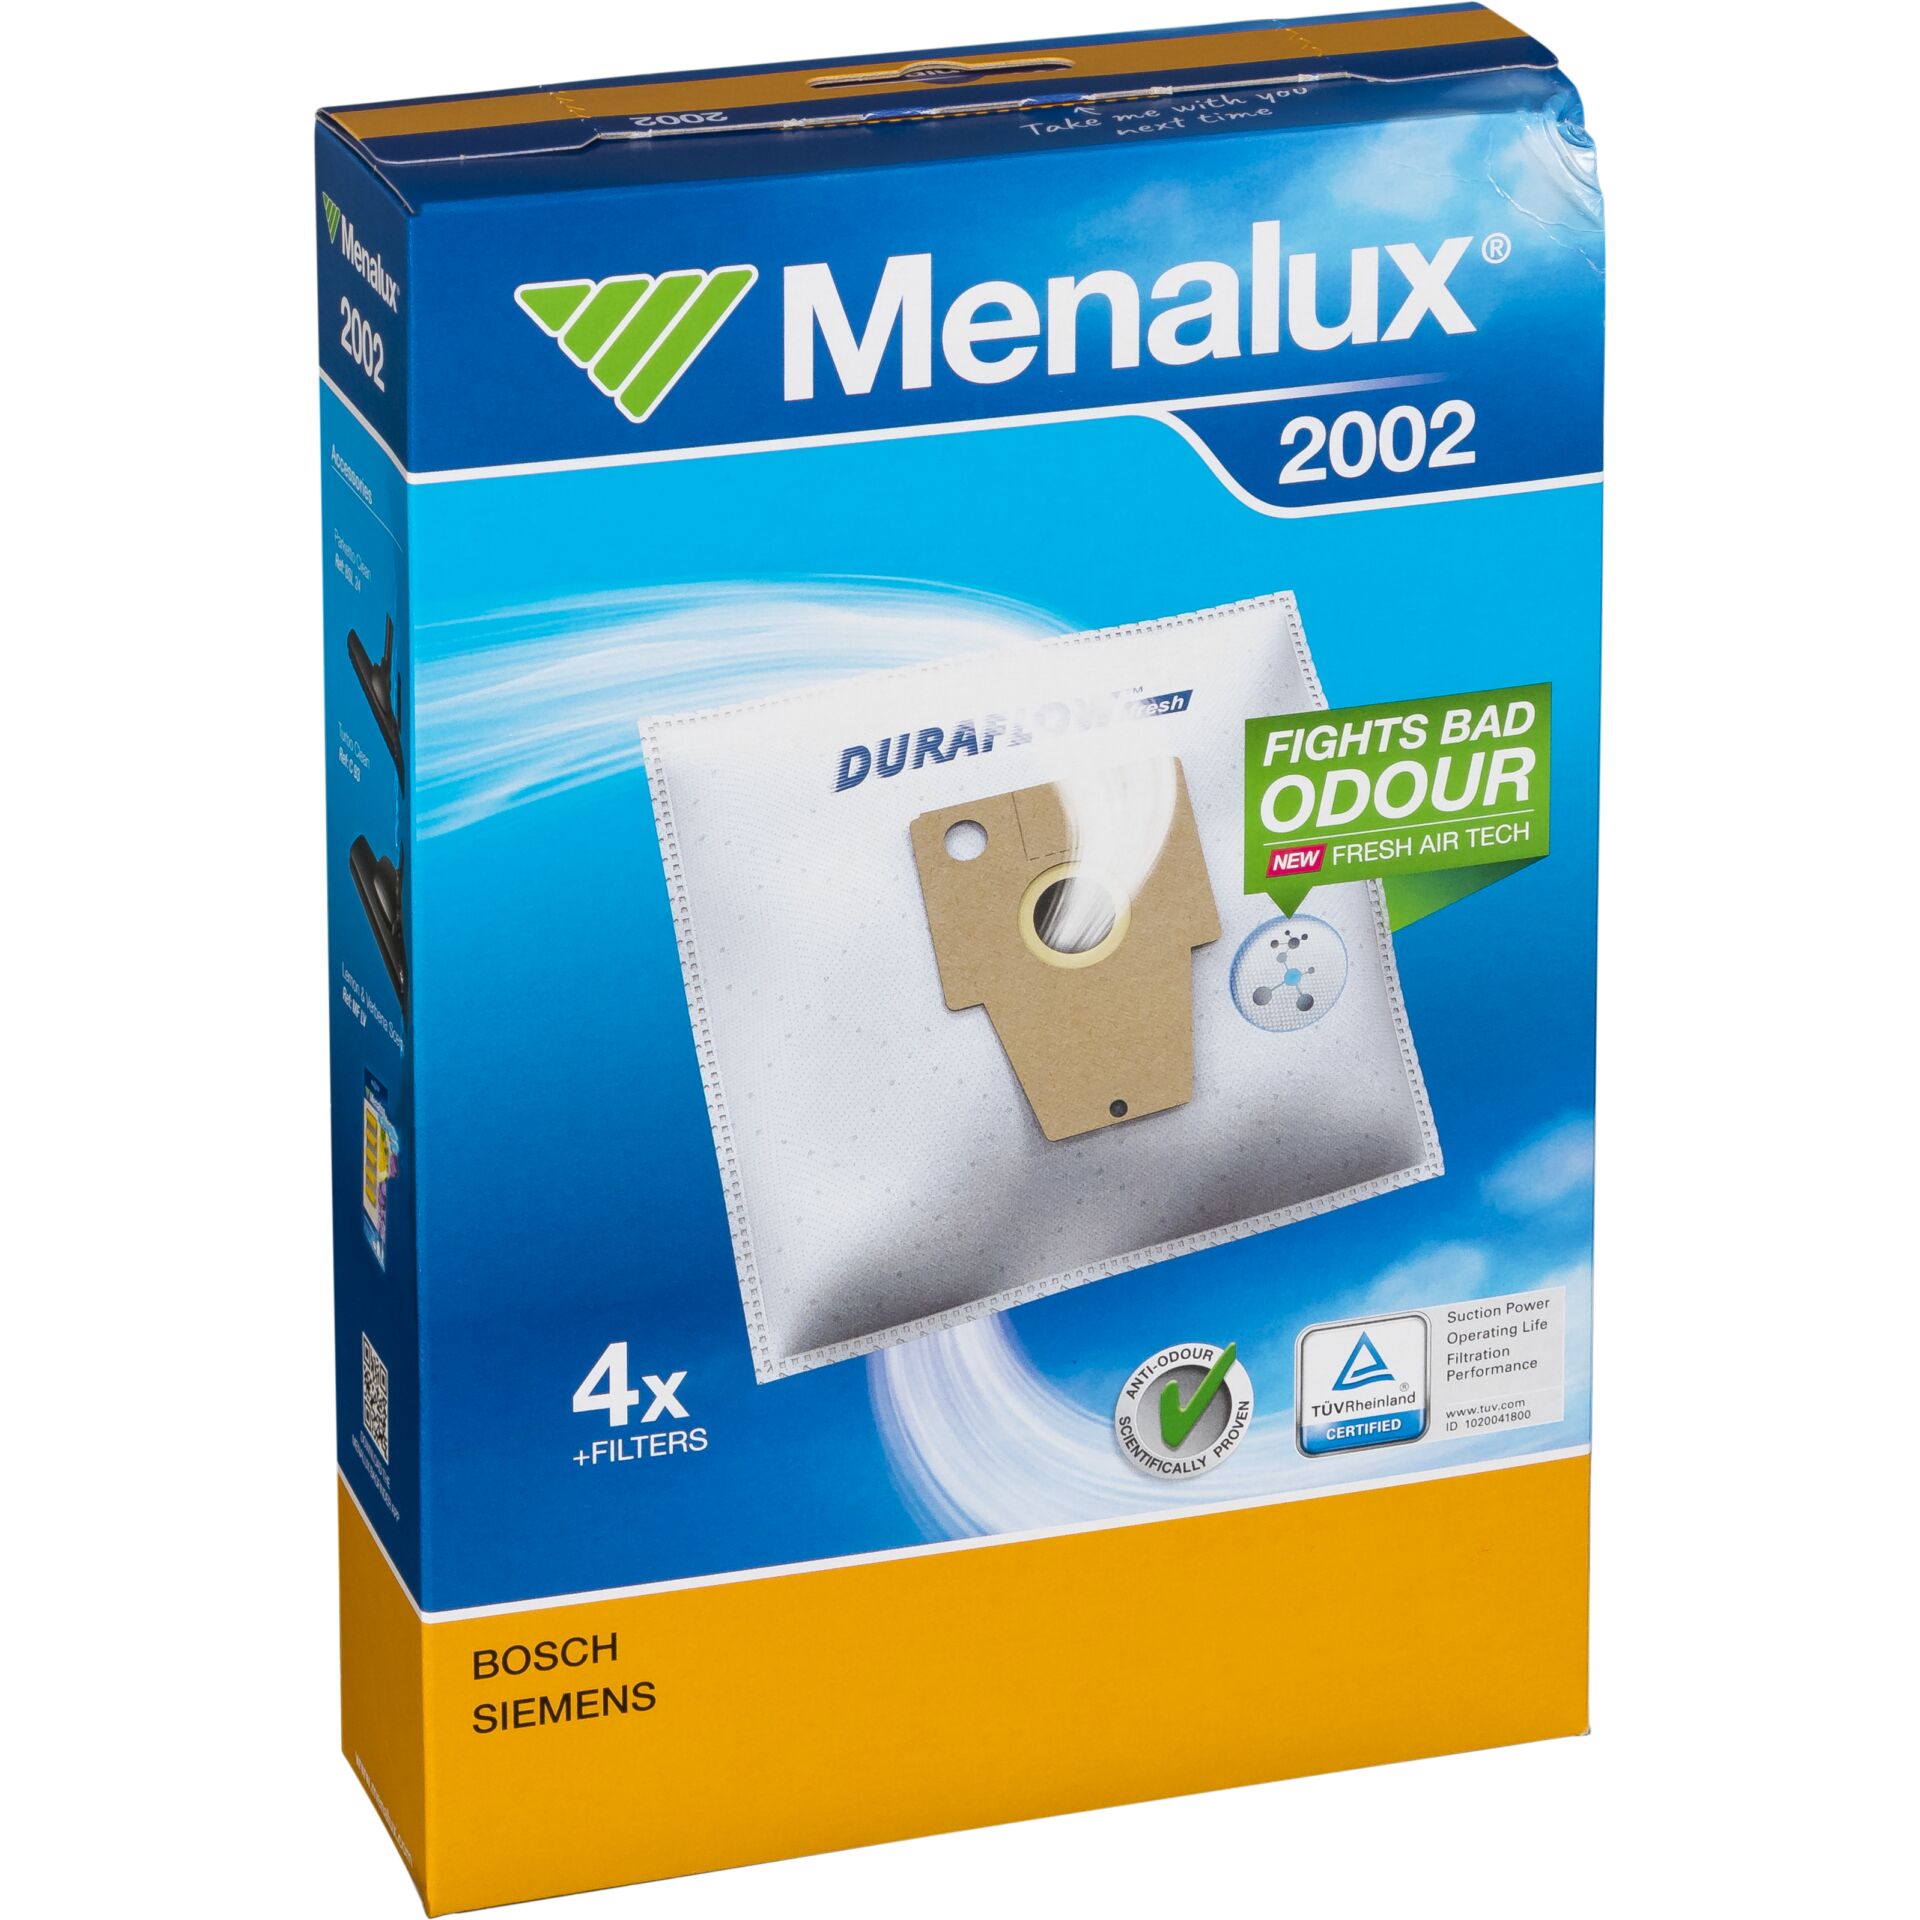 Menalux 2002